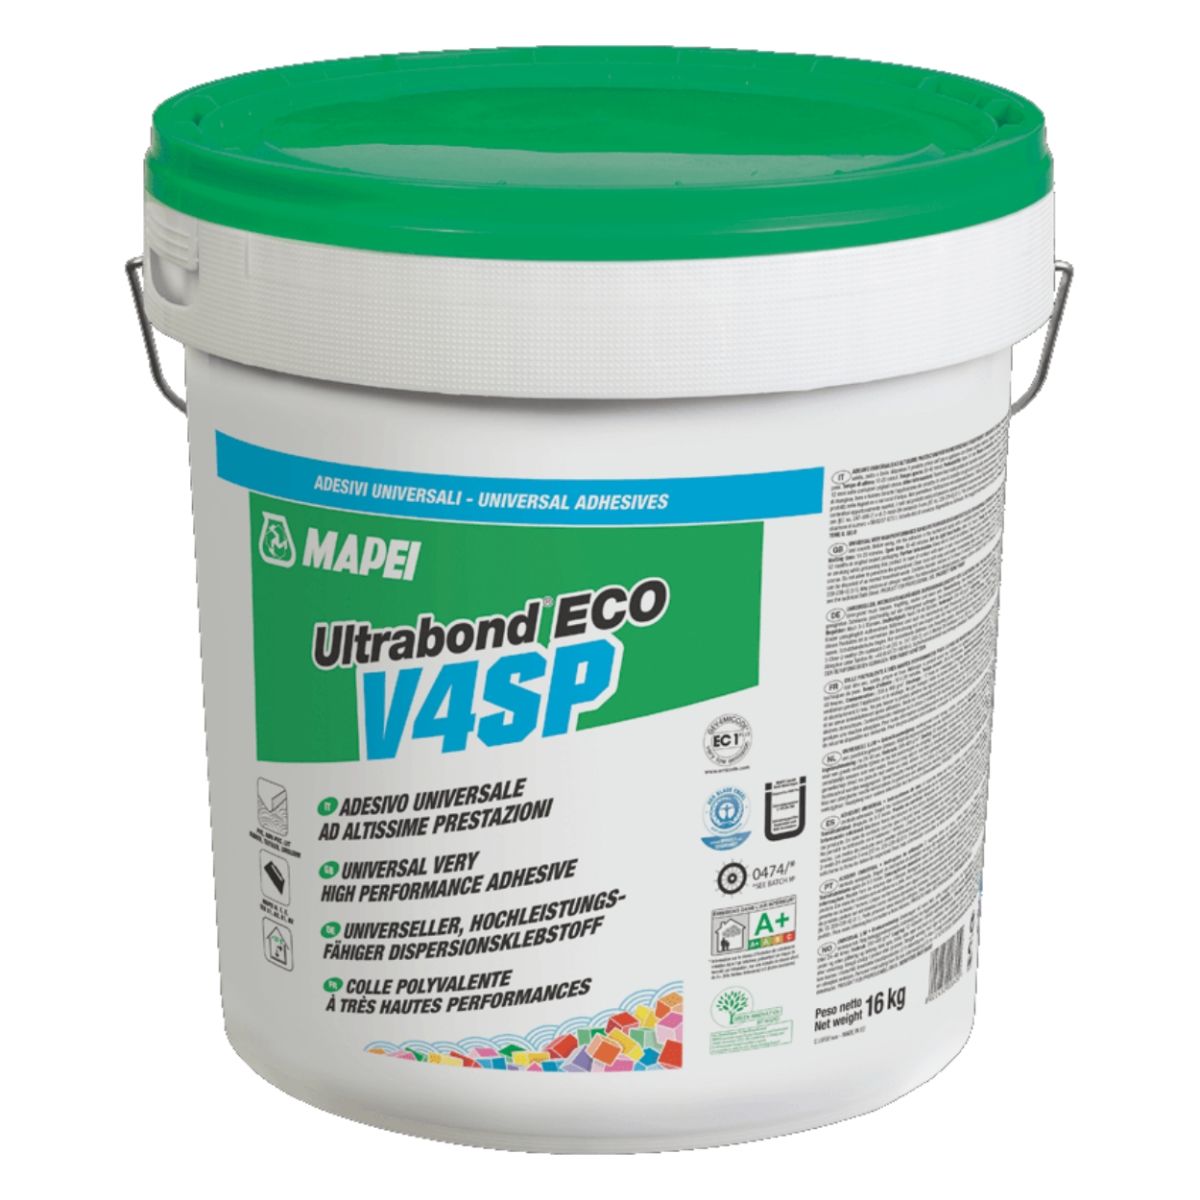 Adhesivo para Piso Vinílico Ultrabond ECO V4SP 14 kg Mapei